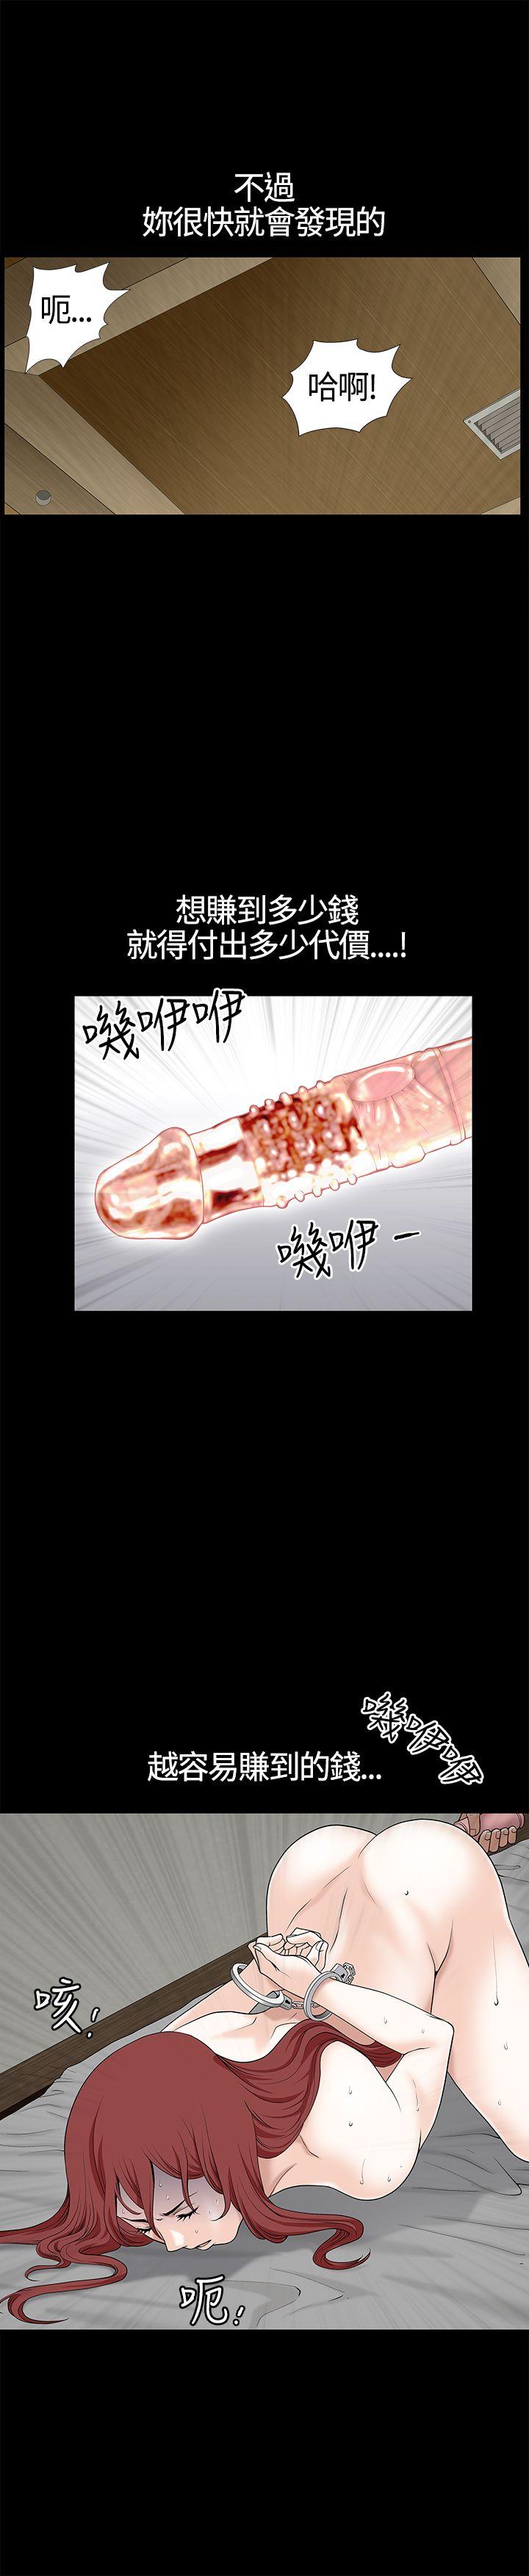 韩国污漫画 人妻性解放3:粗糙的手 第10话 27